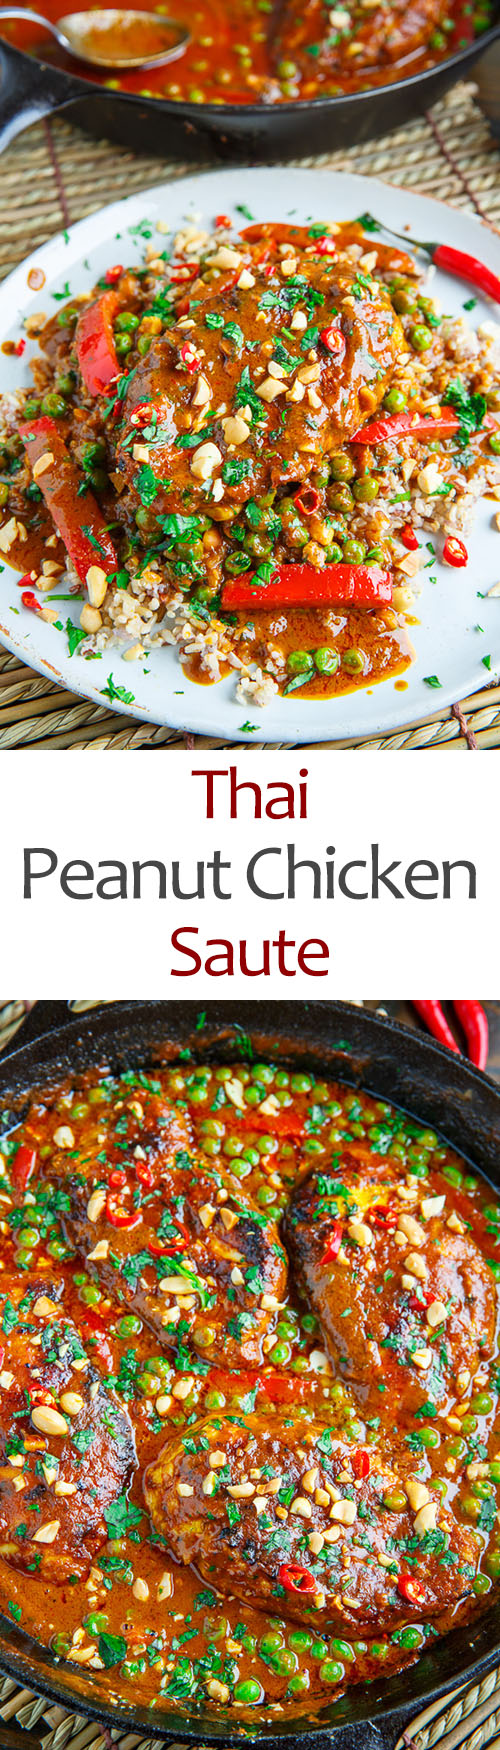 Thai Peanut Chicken Saute